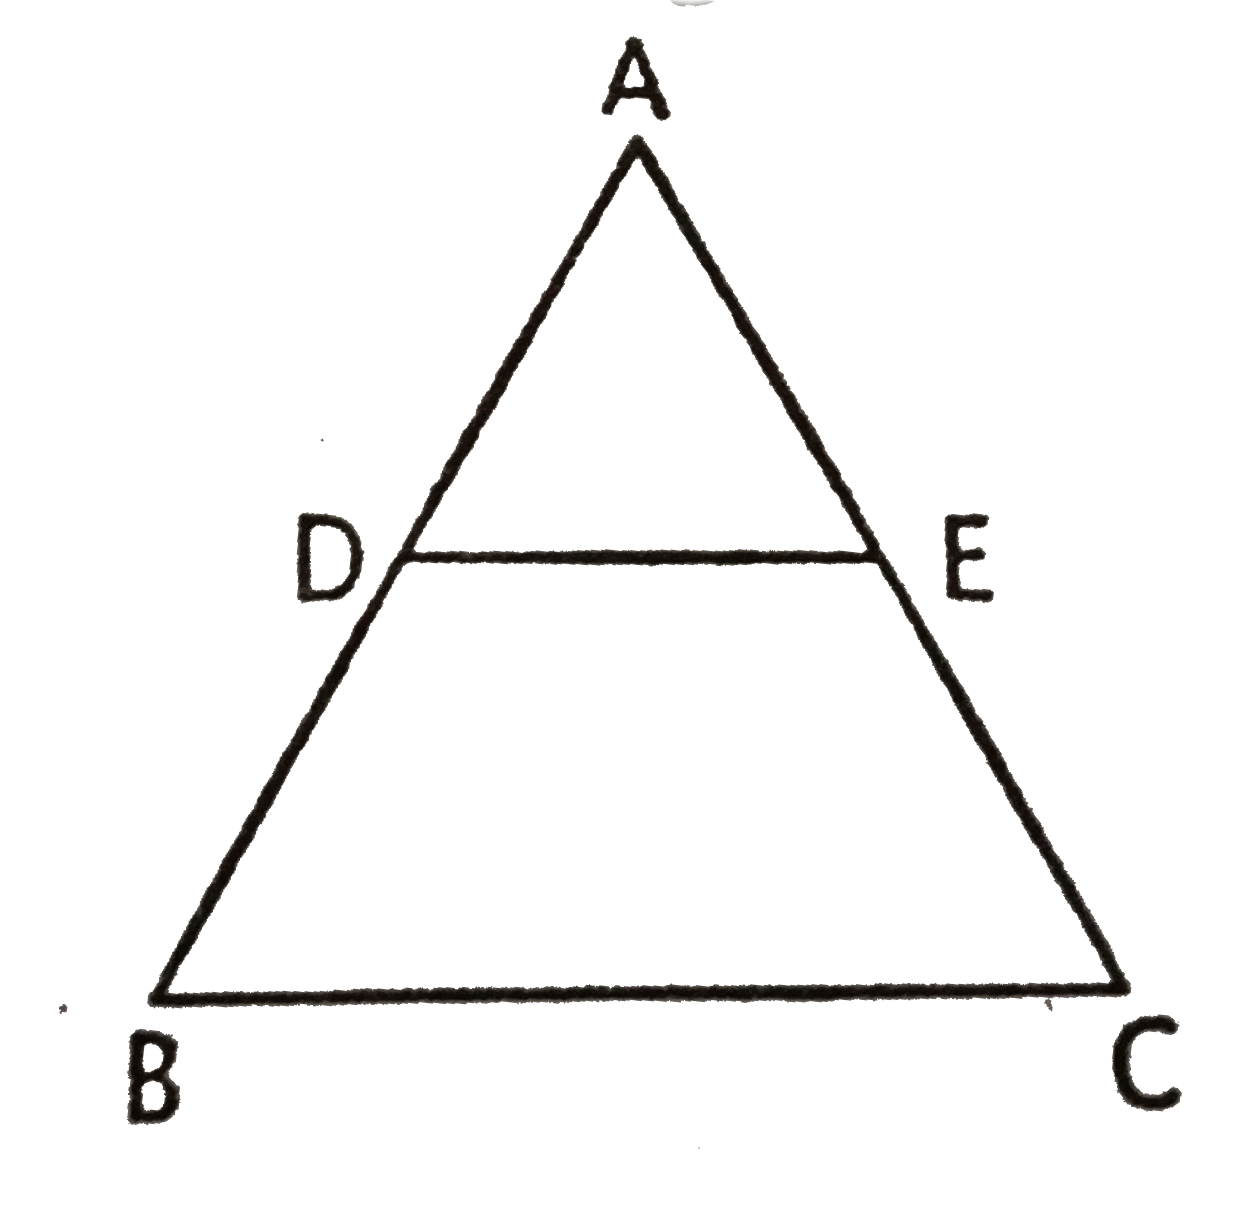 दी गई आकृति में DE||BC और (AD)/(DB)=(3)/(5) यदि AC=4.8 सेमी हो , तो AE का मान ज्ञात कीजिए ।